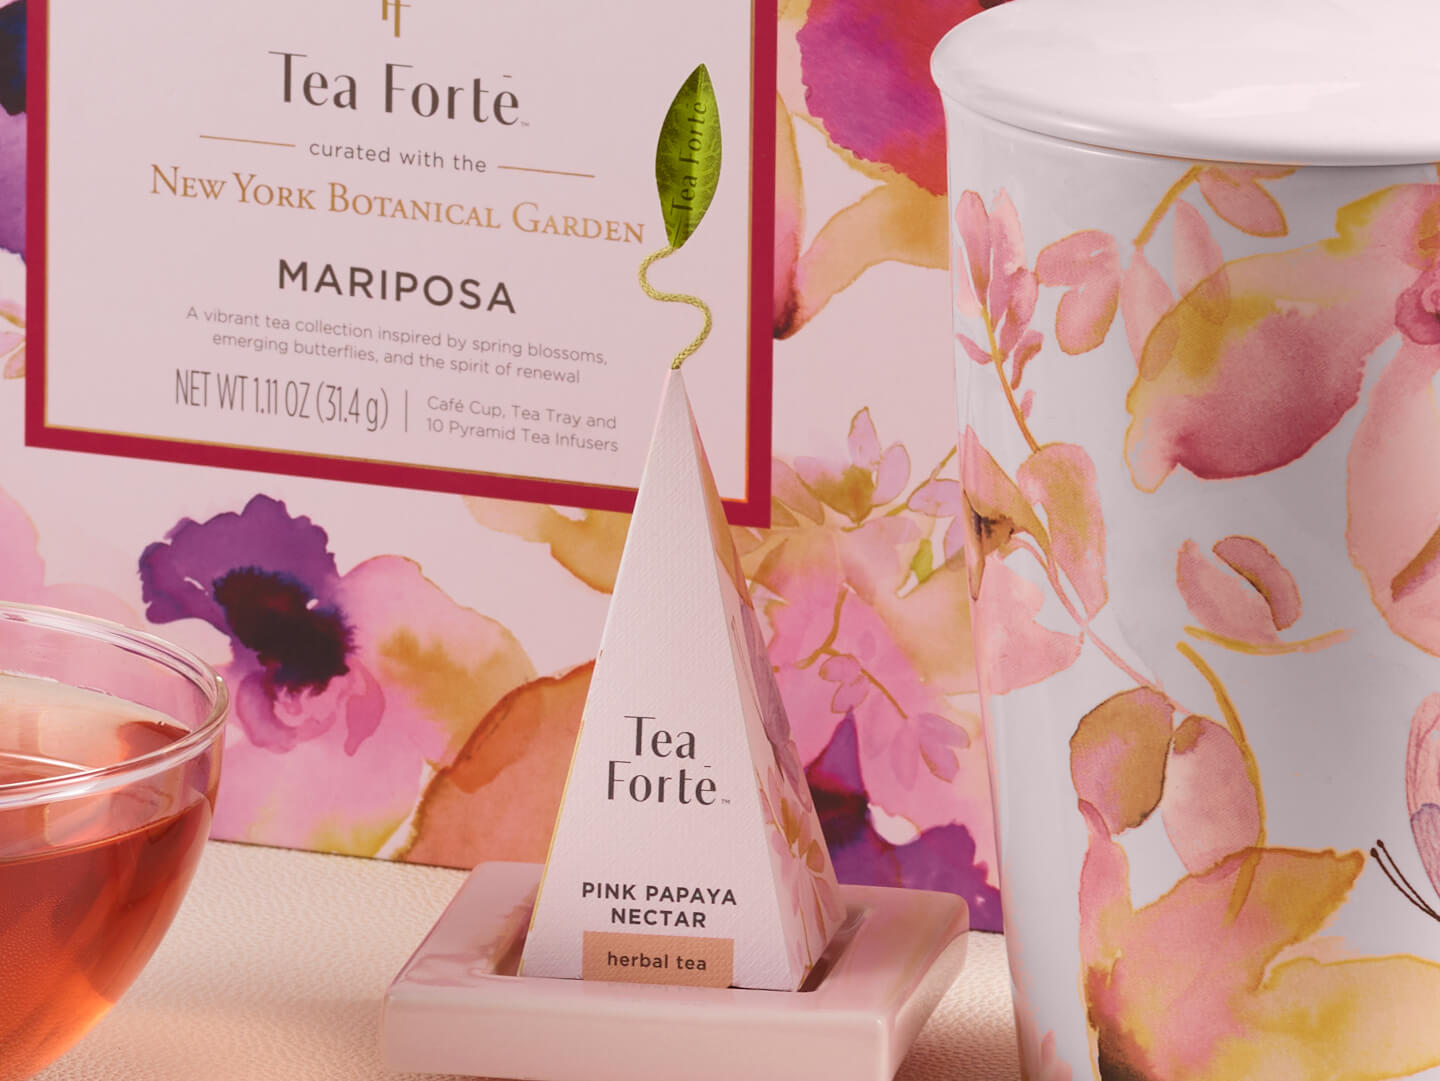 Pink Papaya Nectar pyramid tea infuser with a Mariposa Kati Cup and Gift Set.